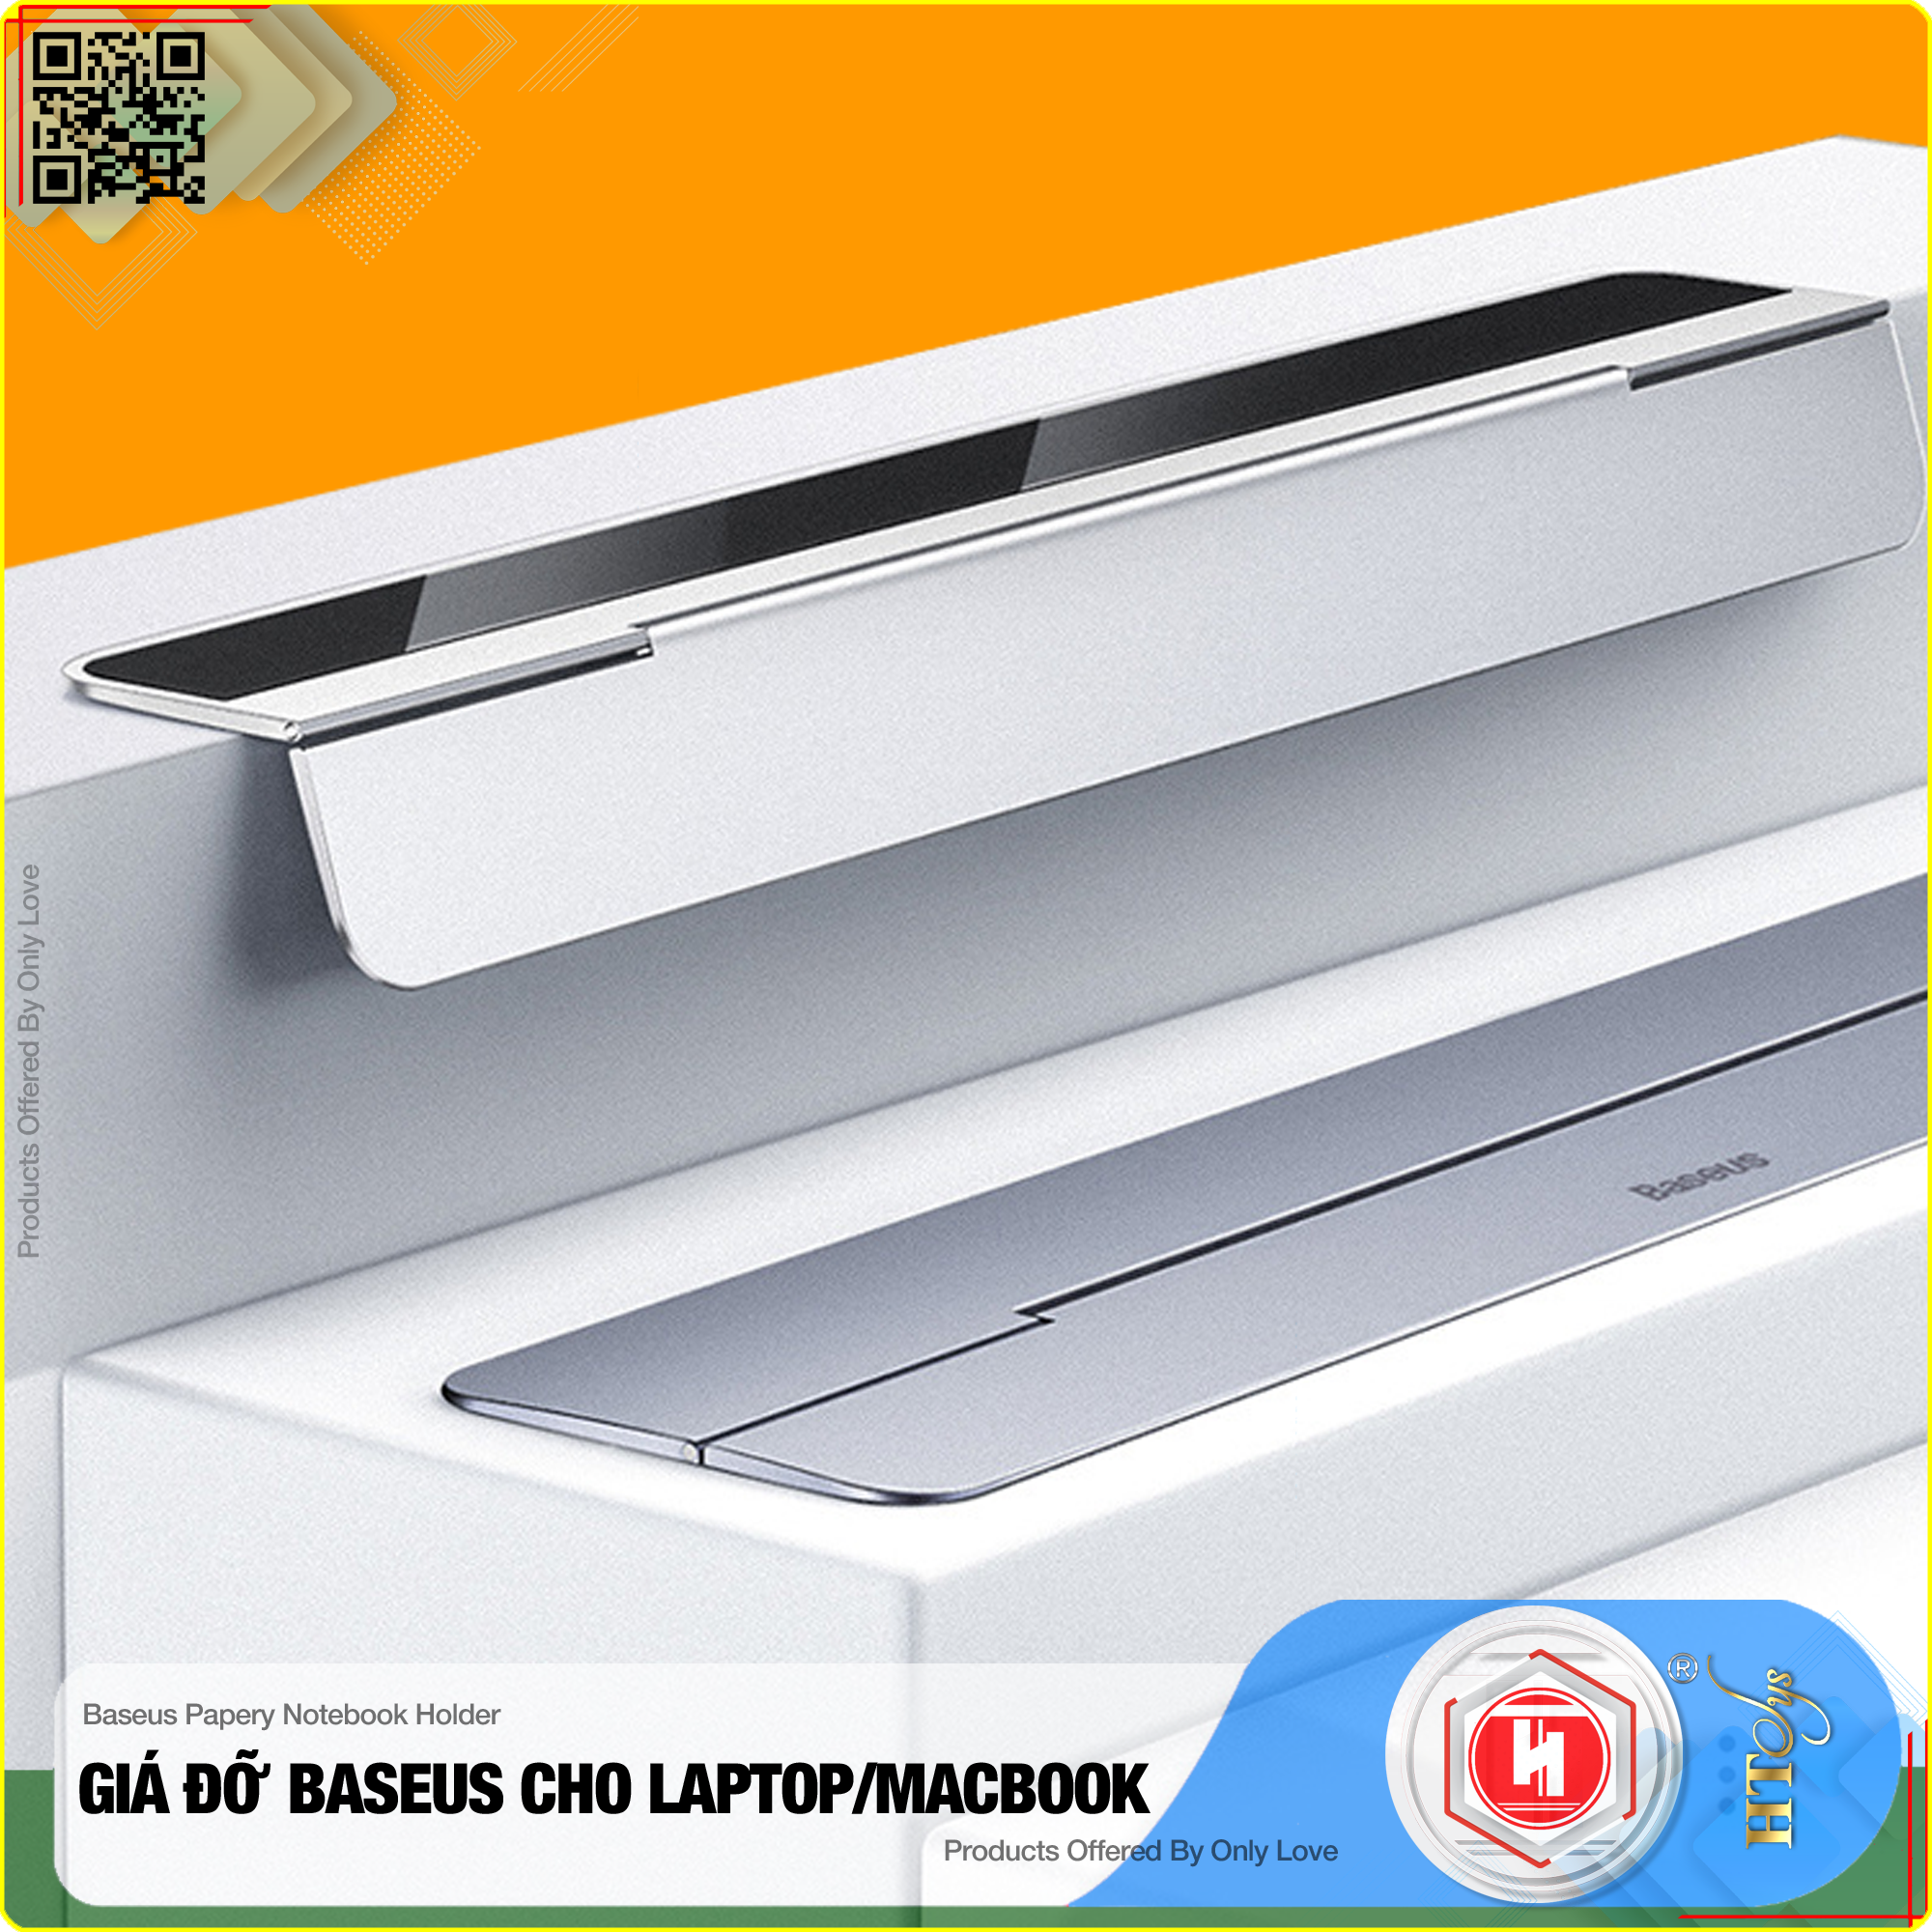 Đế tản nhiệt dạng xếp, siêu mỏng Baseus Papery Notebook Holder dùng cho cho Macbook/ Laptop (0.3cm slim, 8° Angle, Foldable, Portable Alloy Laptop Stand)